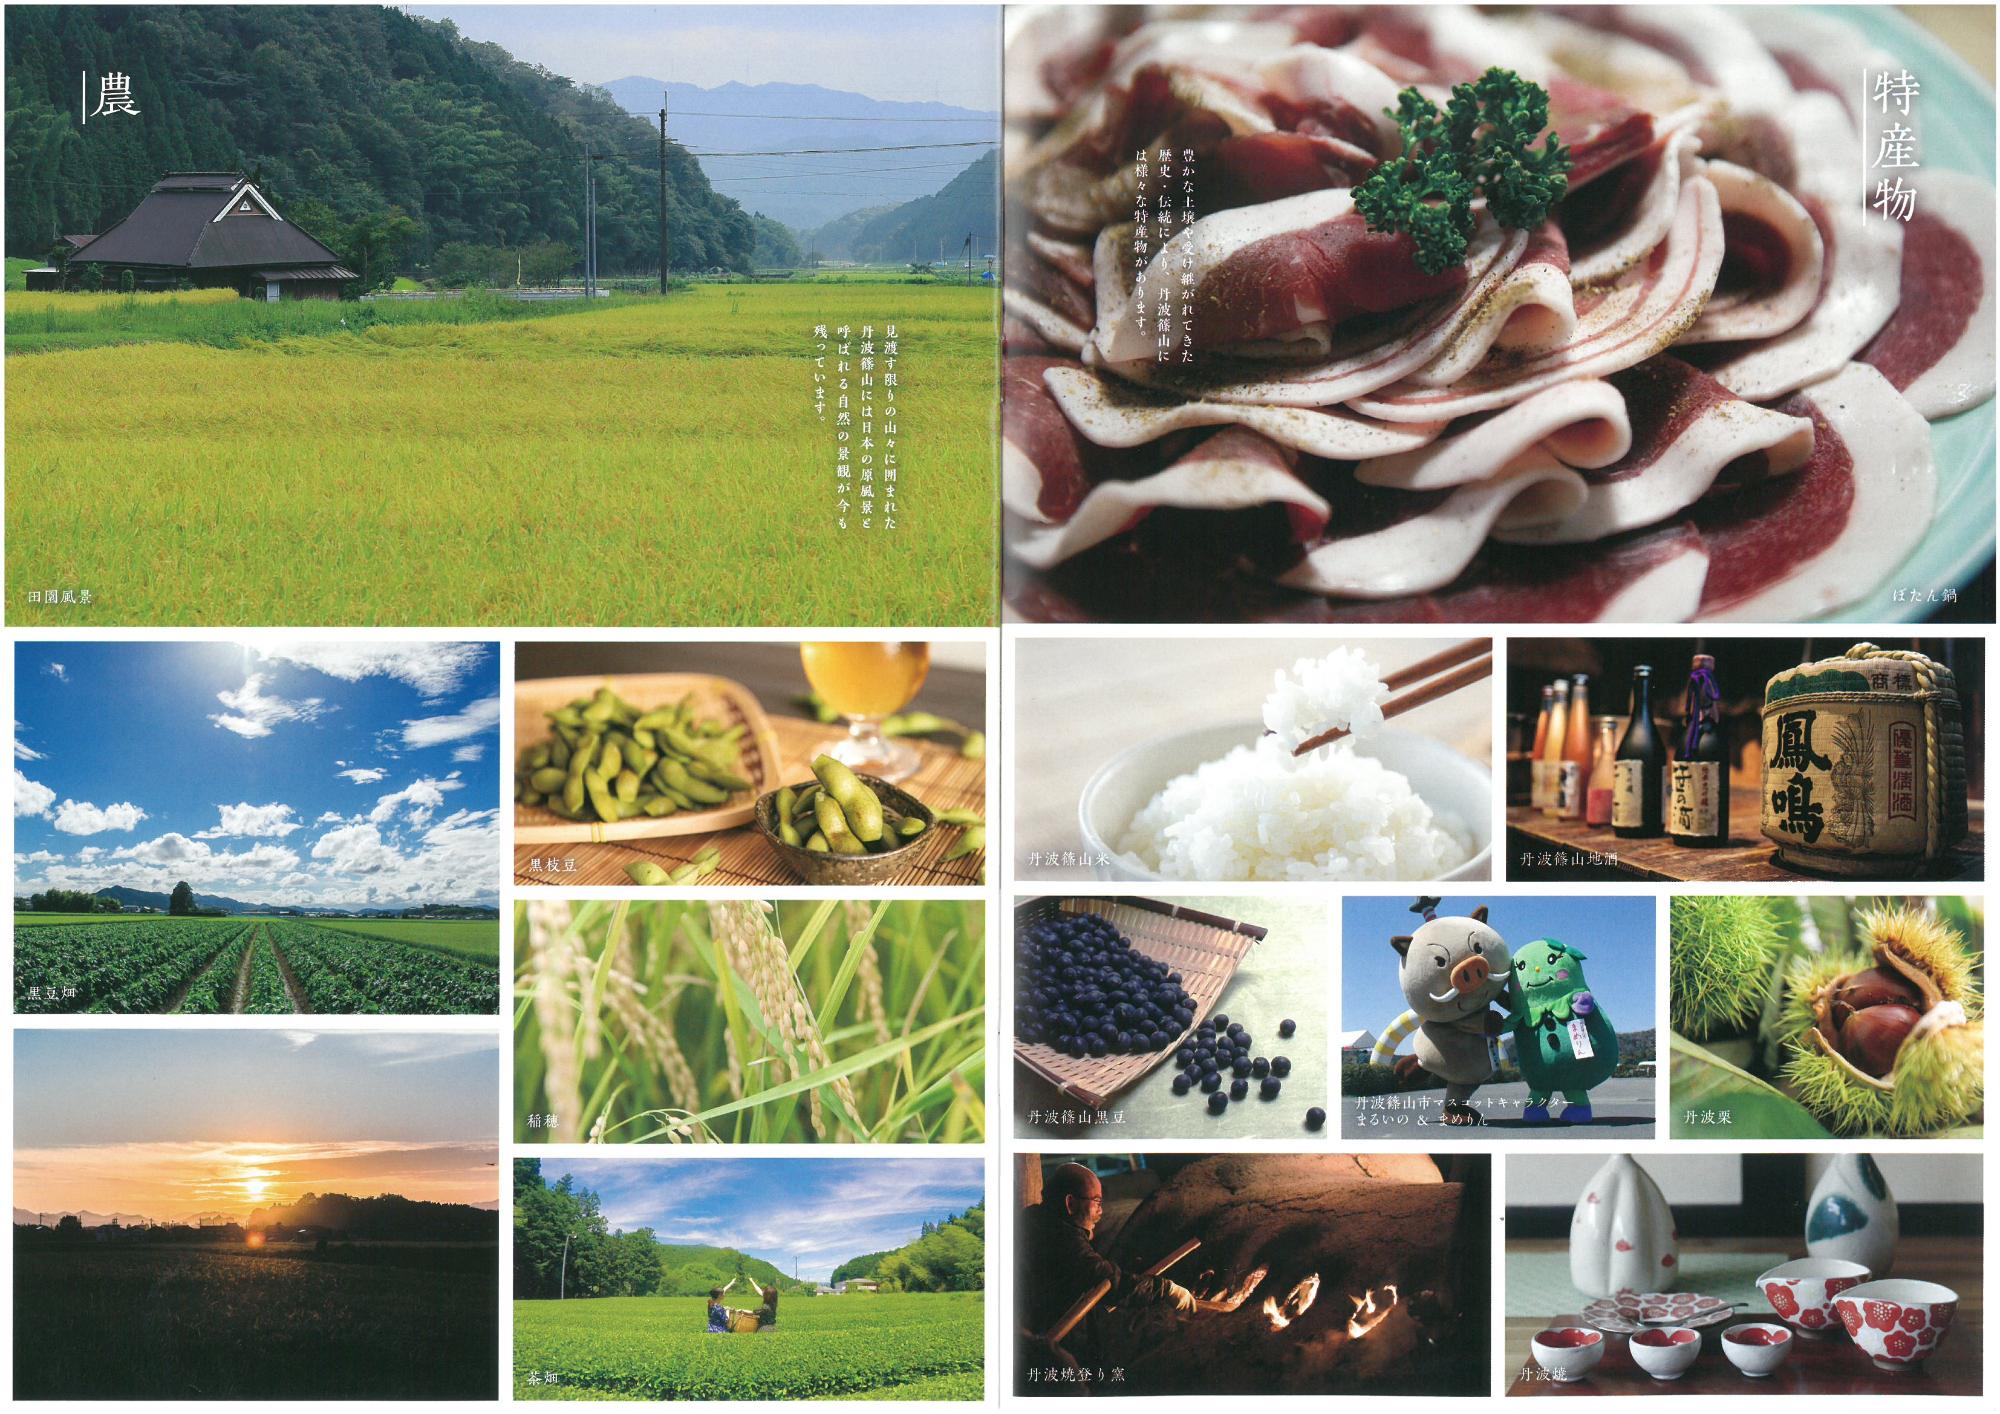 見開きで丹波篠山市の特産物、農の写真が掲載されている。枝豆、丹波栗、丹波篠山米、鳳鳴など。